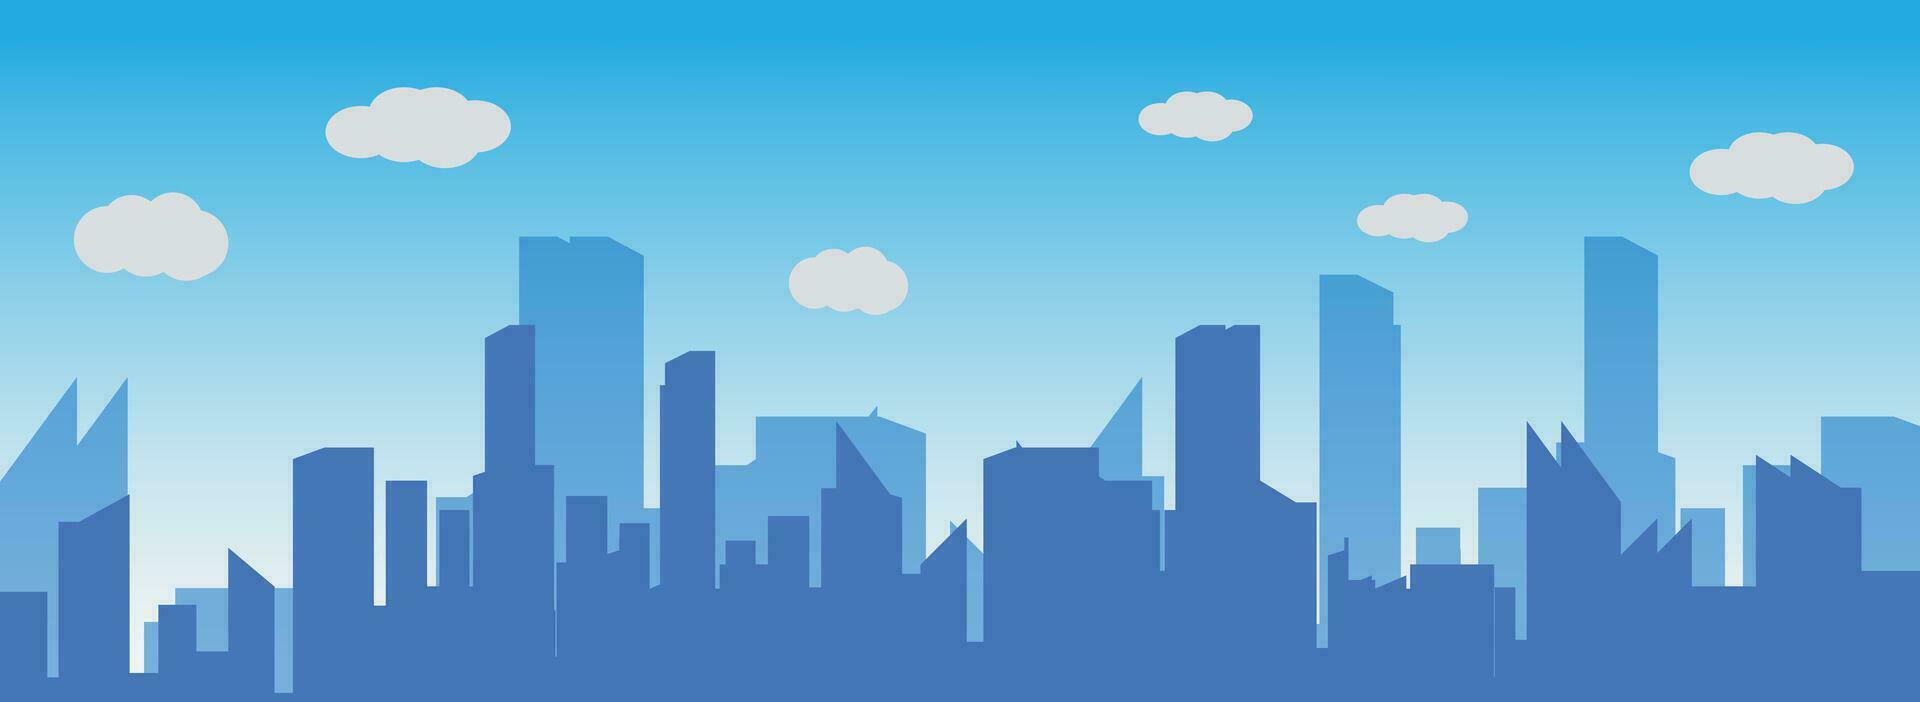 illustratie vector van silhouet stad Bij ochtend- met wolken